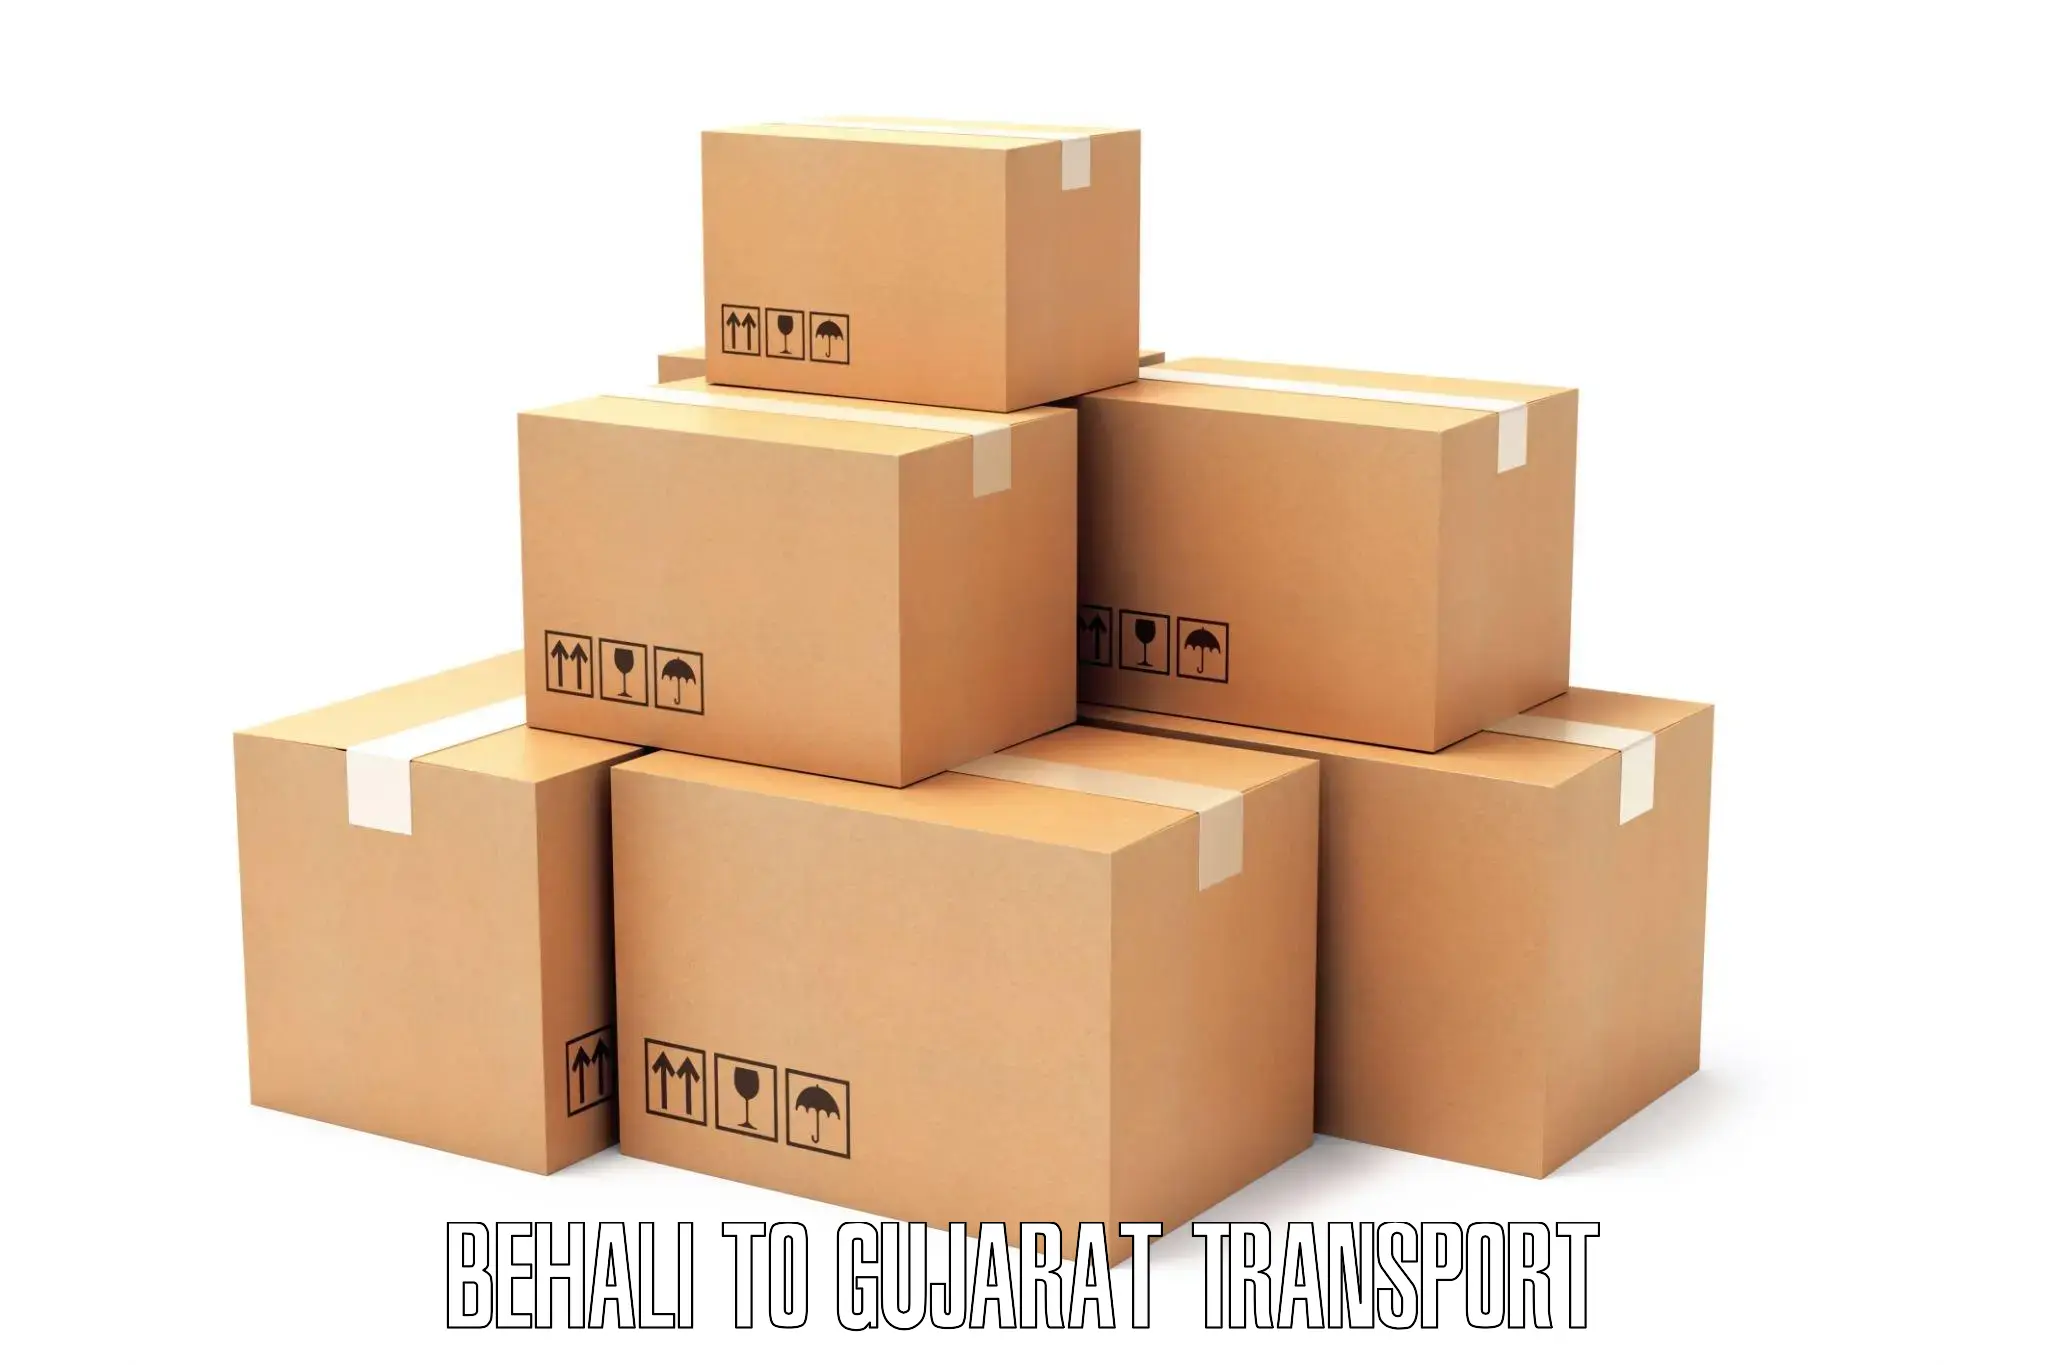 Online transport booking Behali to Surendranagar